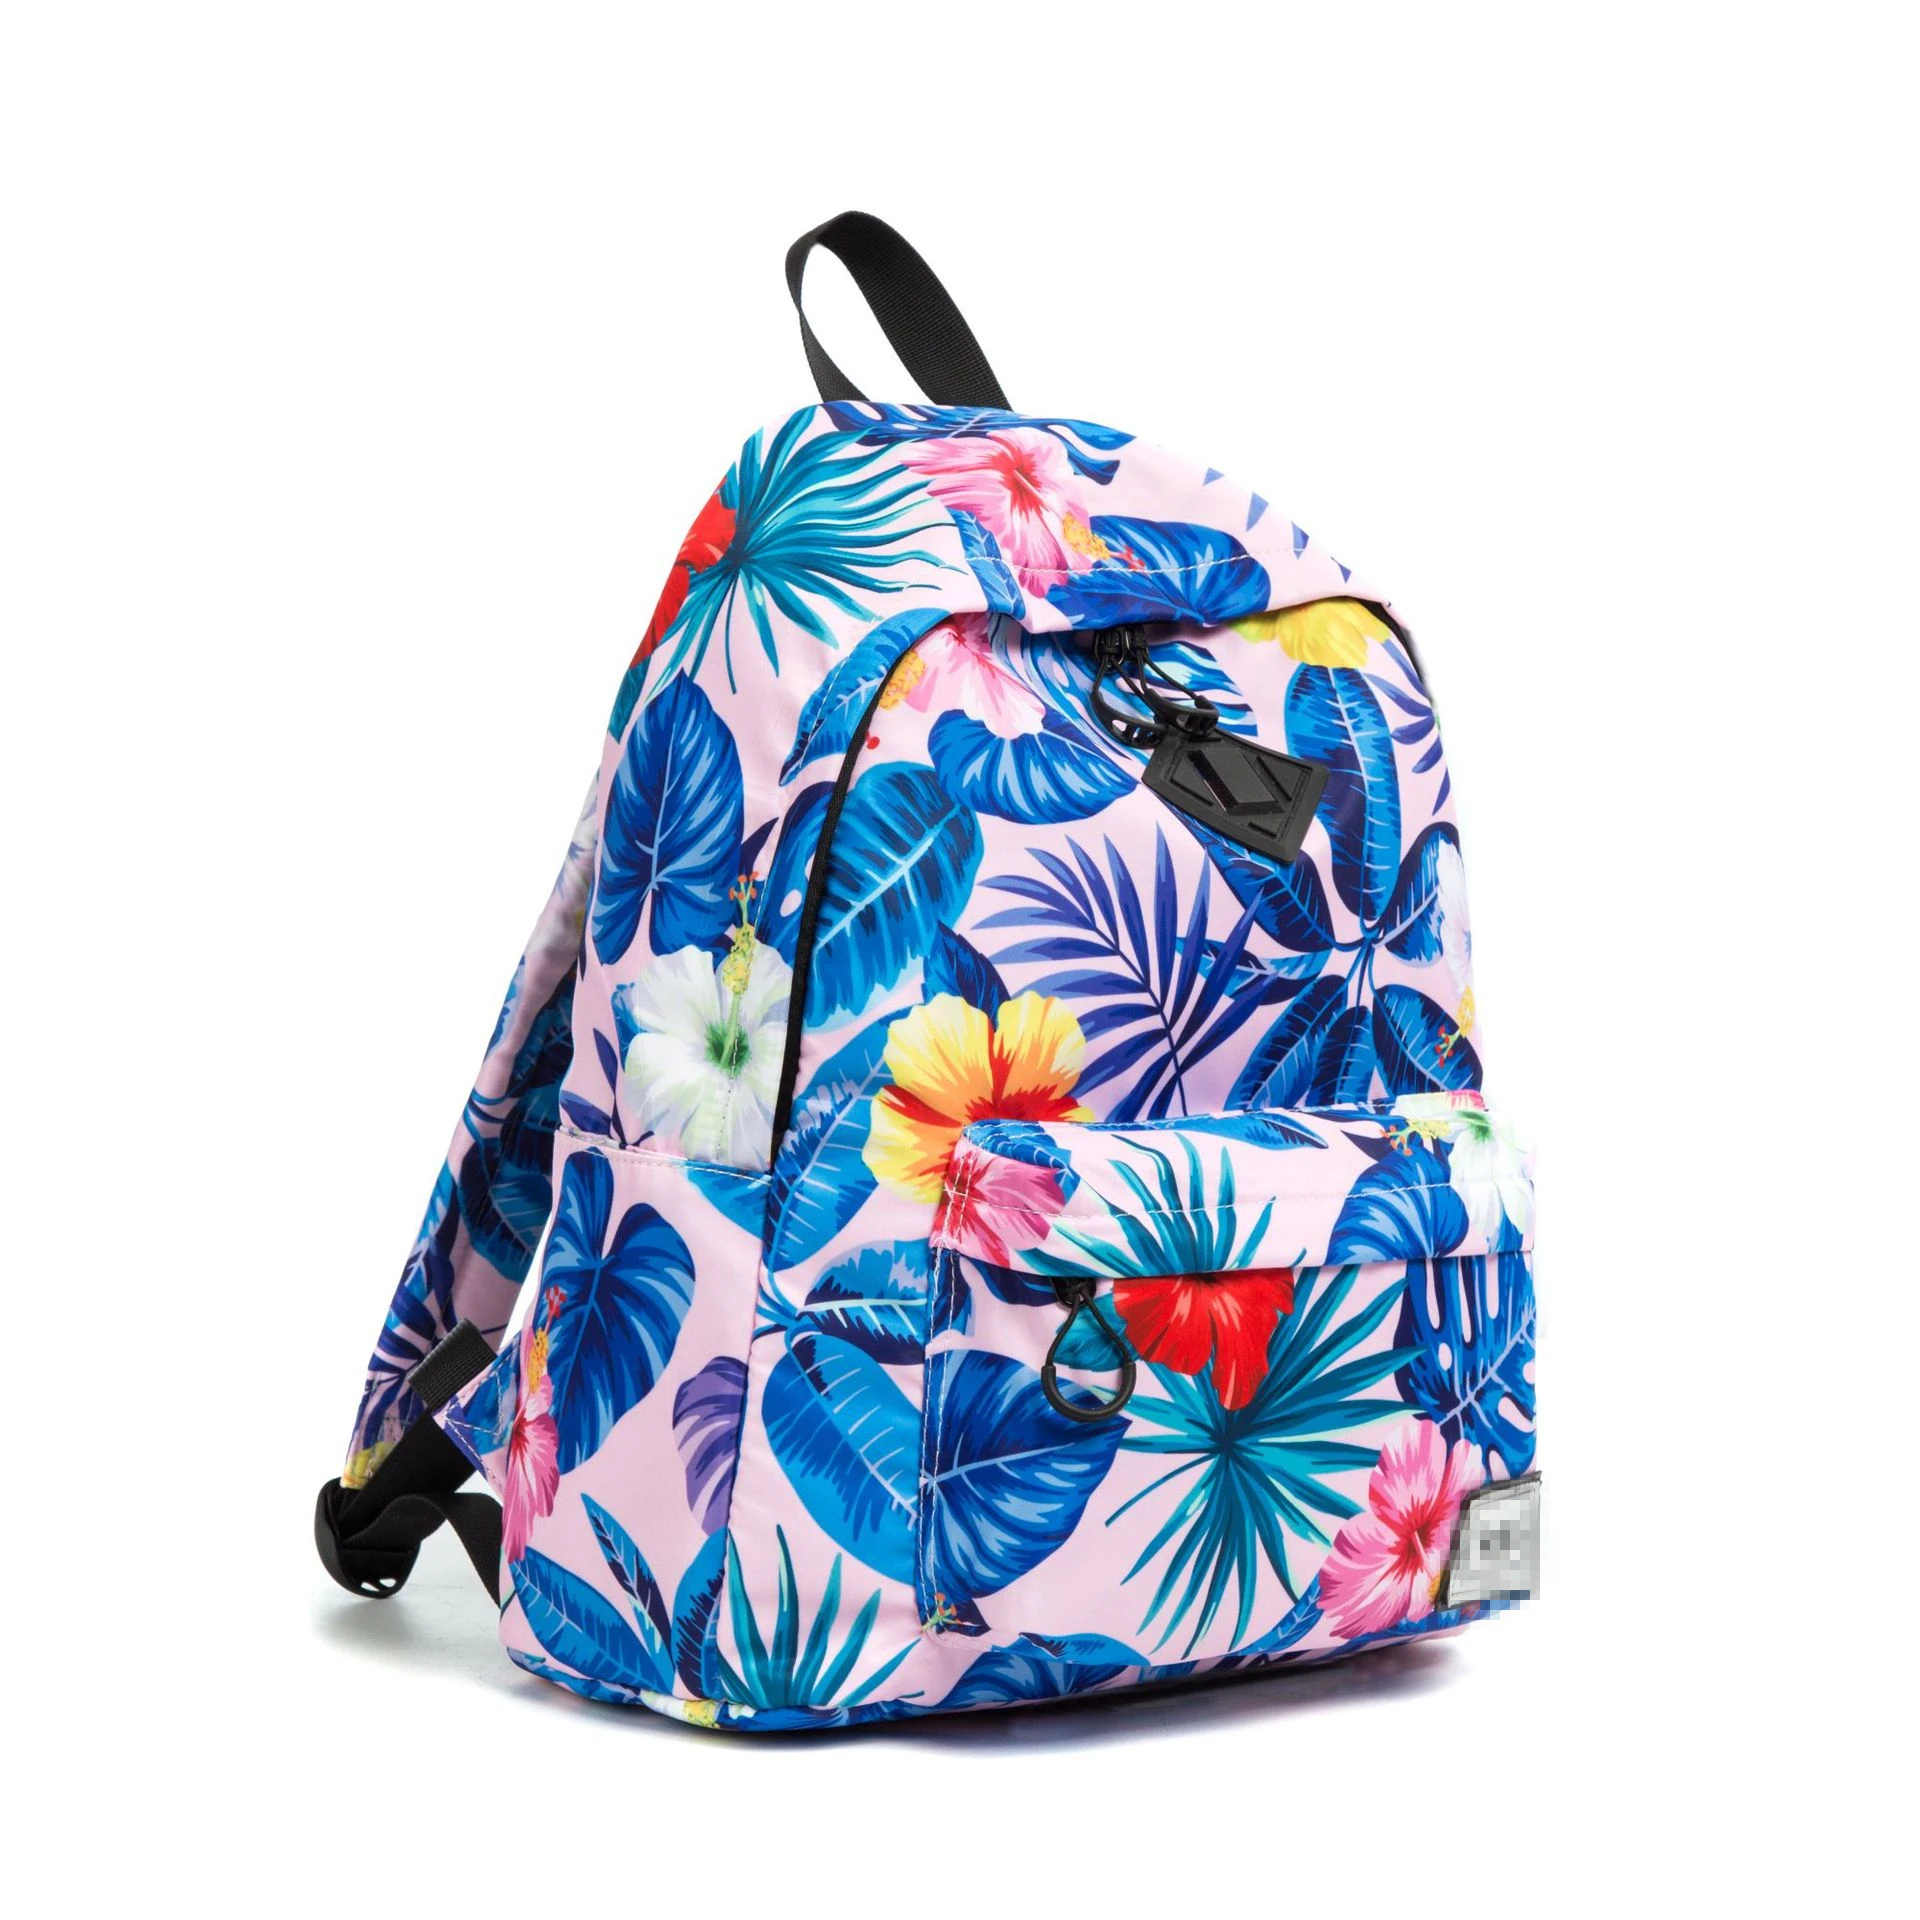 Школьный рюкзак с цветочным принтом для подростков, студентов, рюкзак для девочек, рюкзаки для детского сада, спортивная сумка 16 дюймов, рюк...